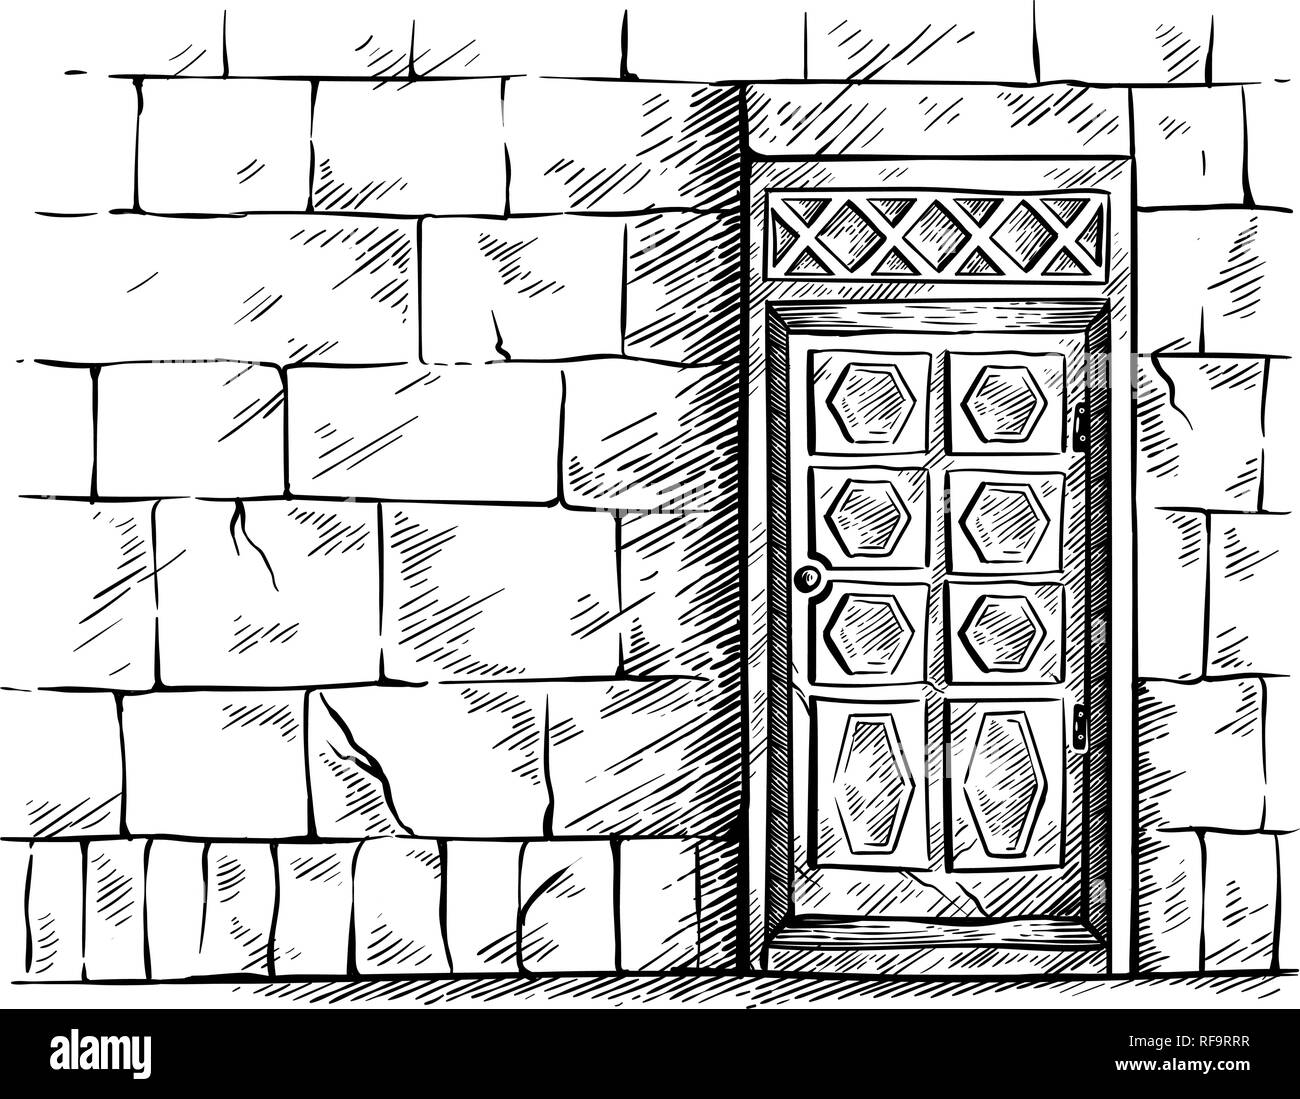 Skizze Hand gezeichnet alte rechteckige hölzerne Tür in der Mauer Vector Illustration Stock Vektor